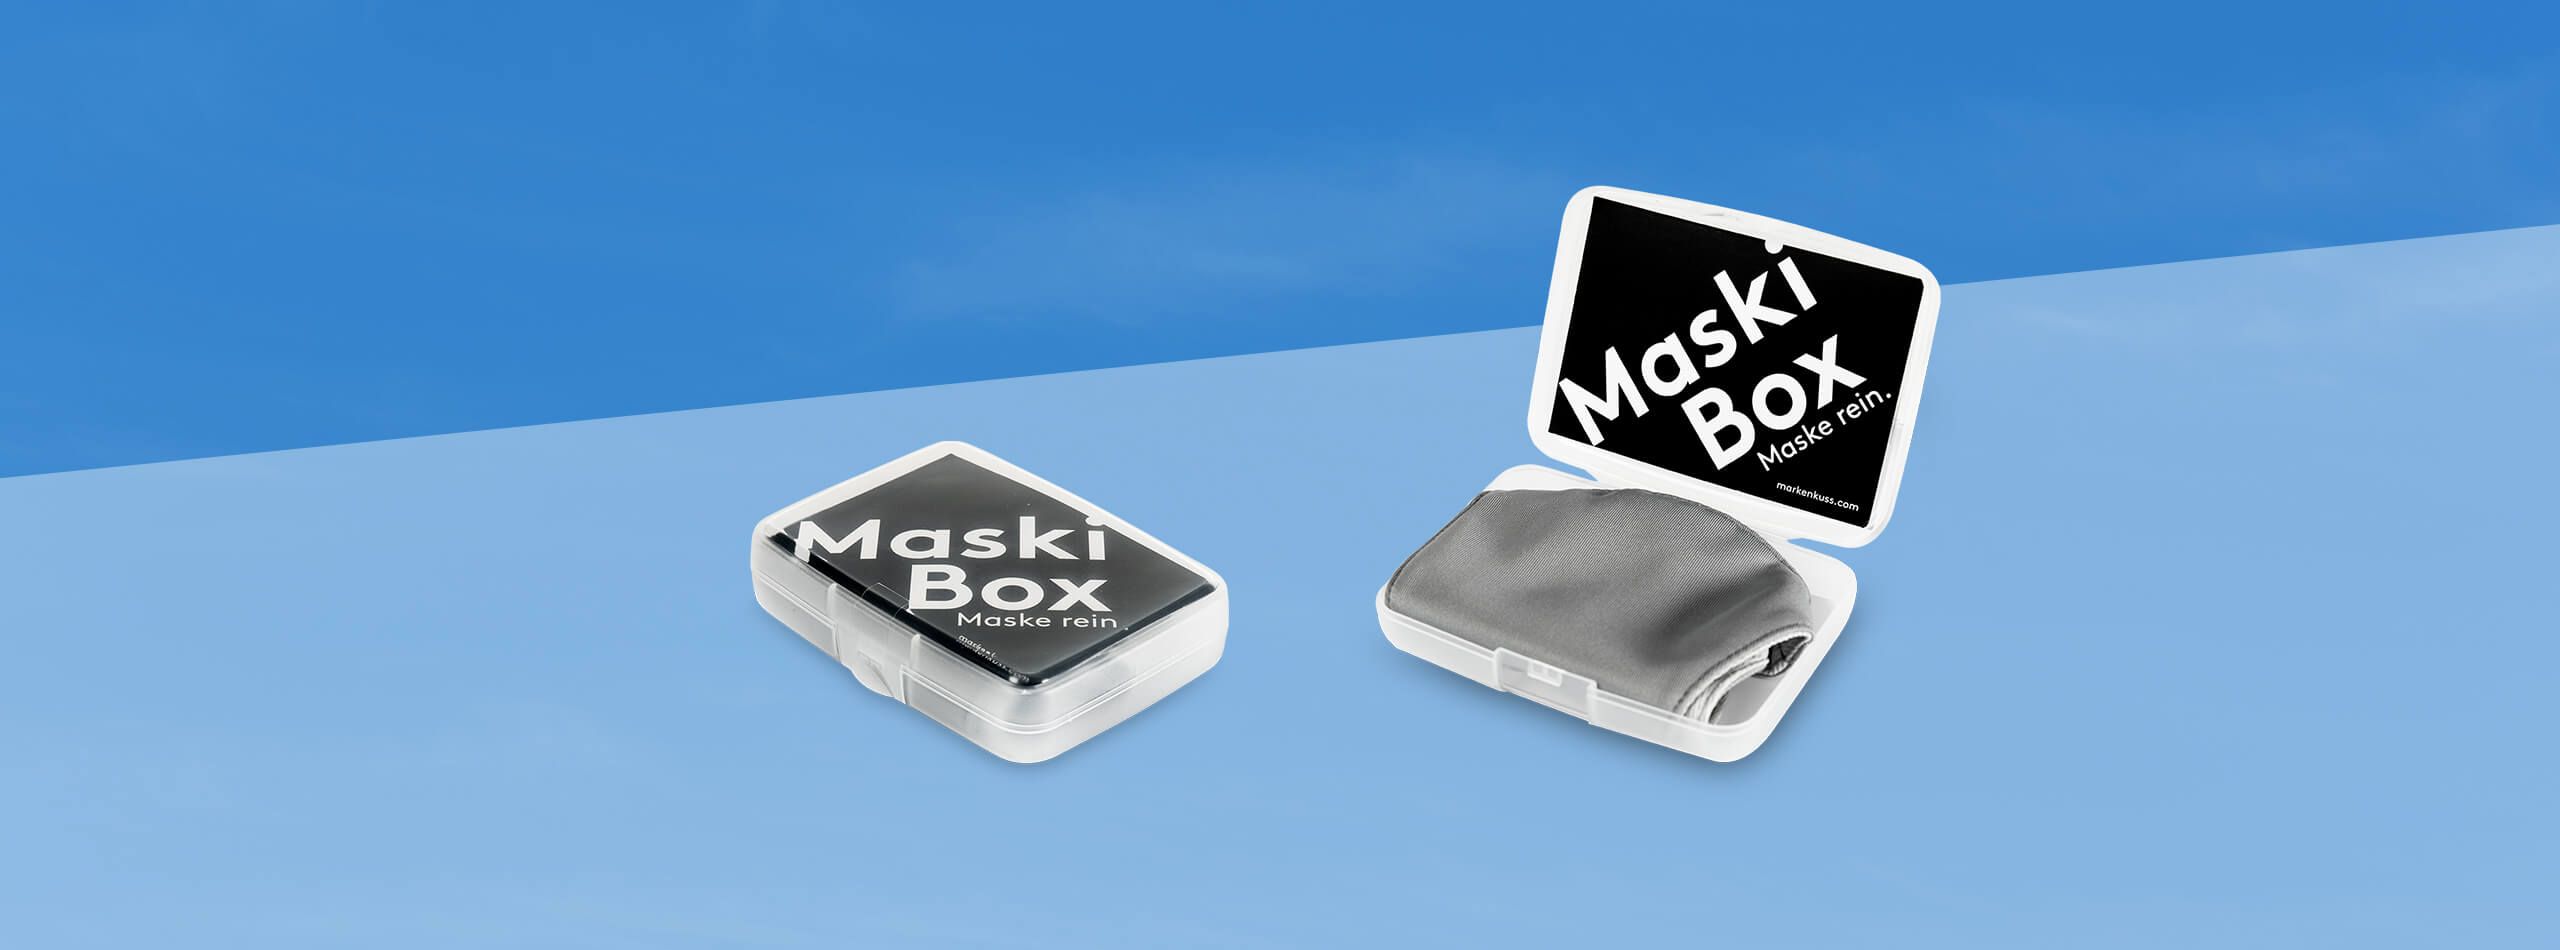 Maskenboxen mit individuellem Druck, Maski-Box by Markenkuss, Hygiene-Werbeartikel